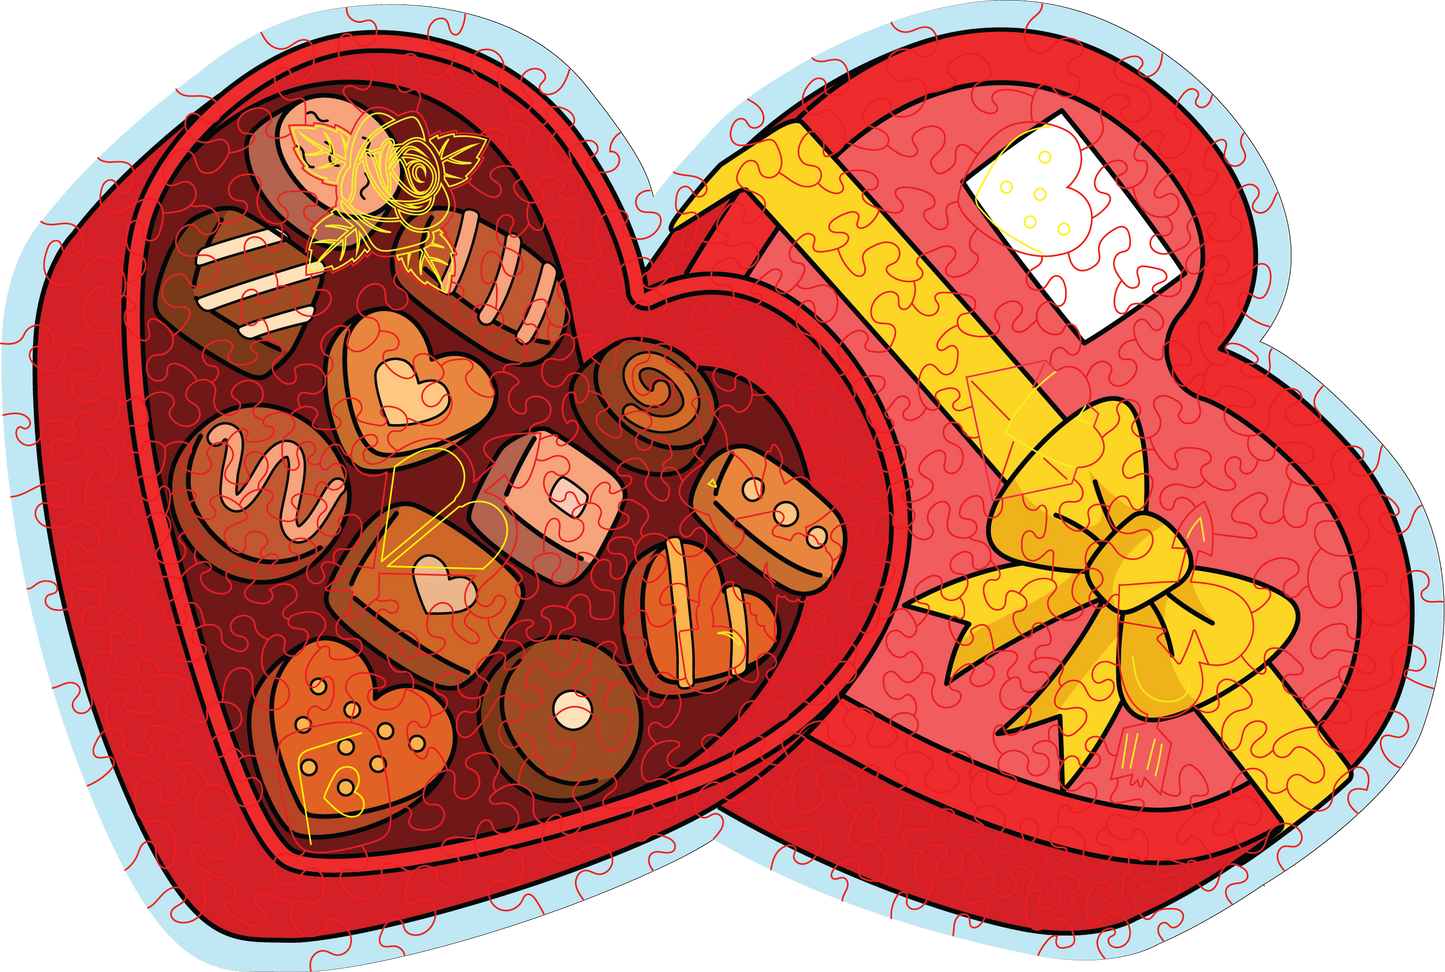 Valentines Chocolates